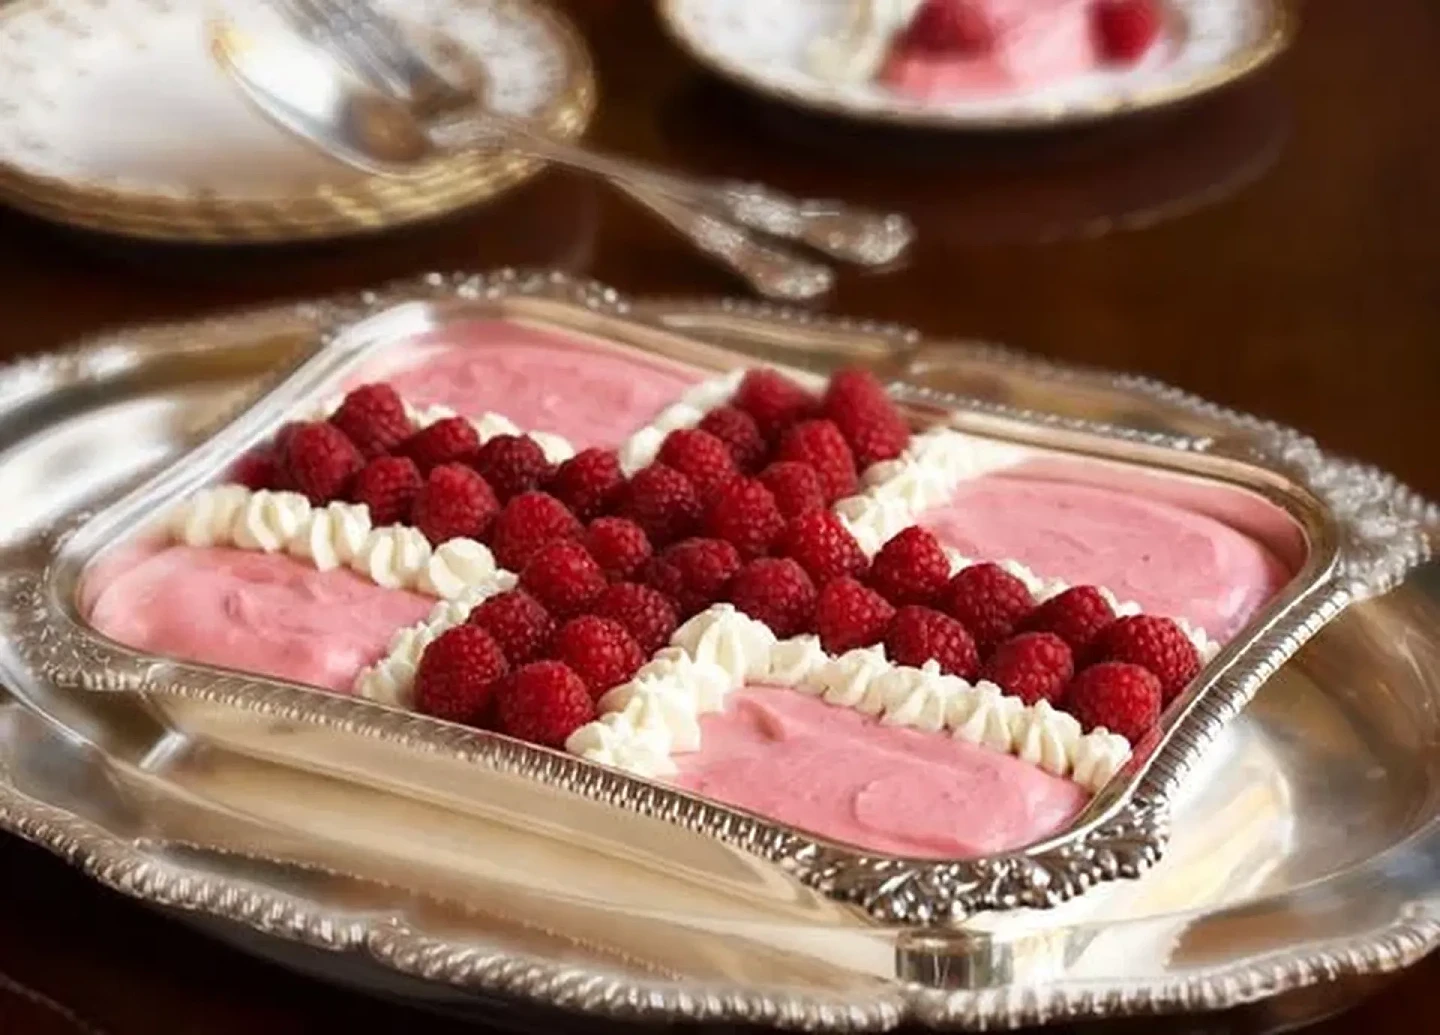 女王最喜欢的甜点“弗兰布罗伊斯圣乔治”造型似英国国旗。（《每日快报》报道截图）